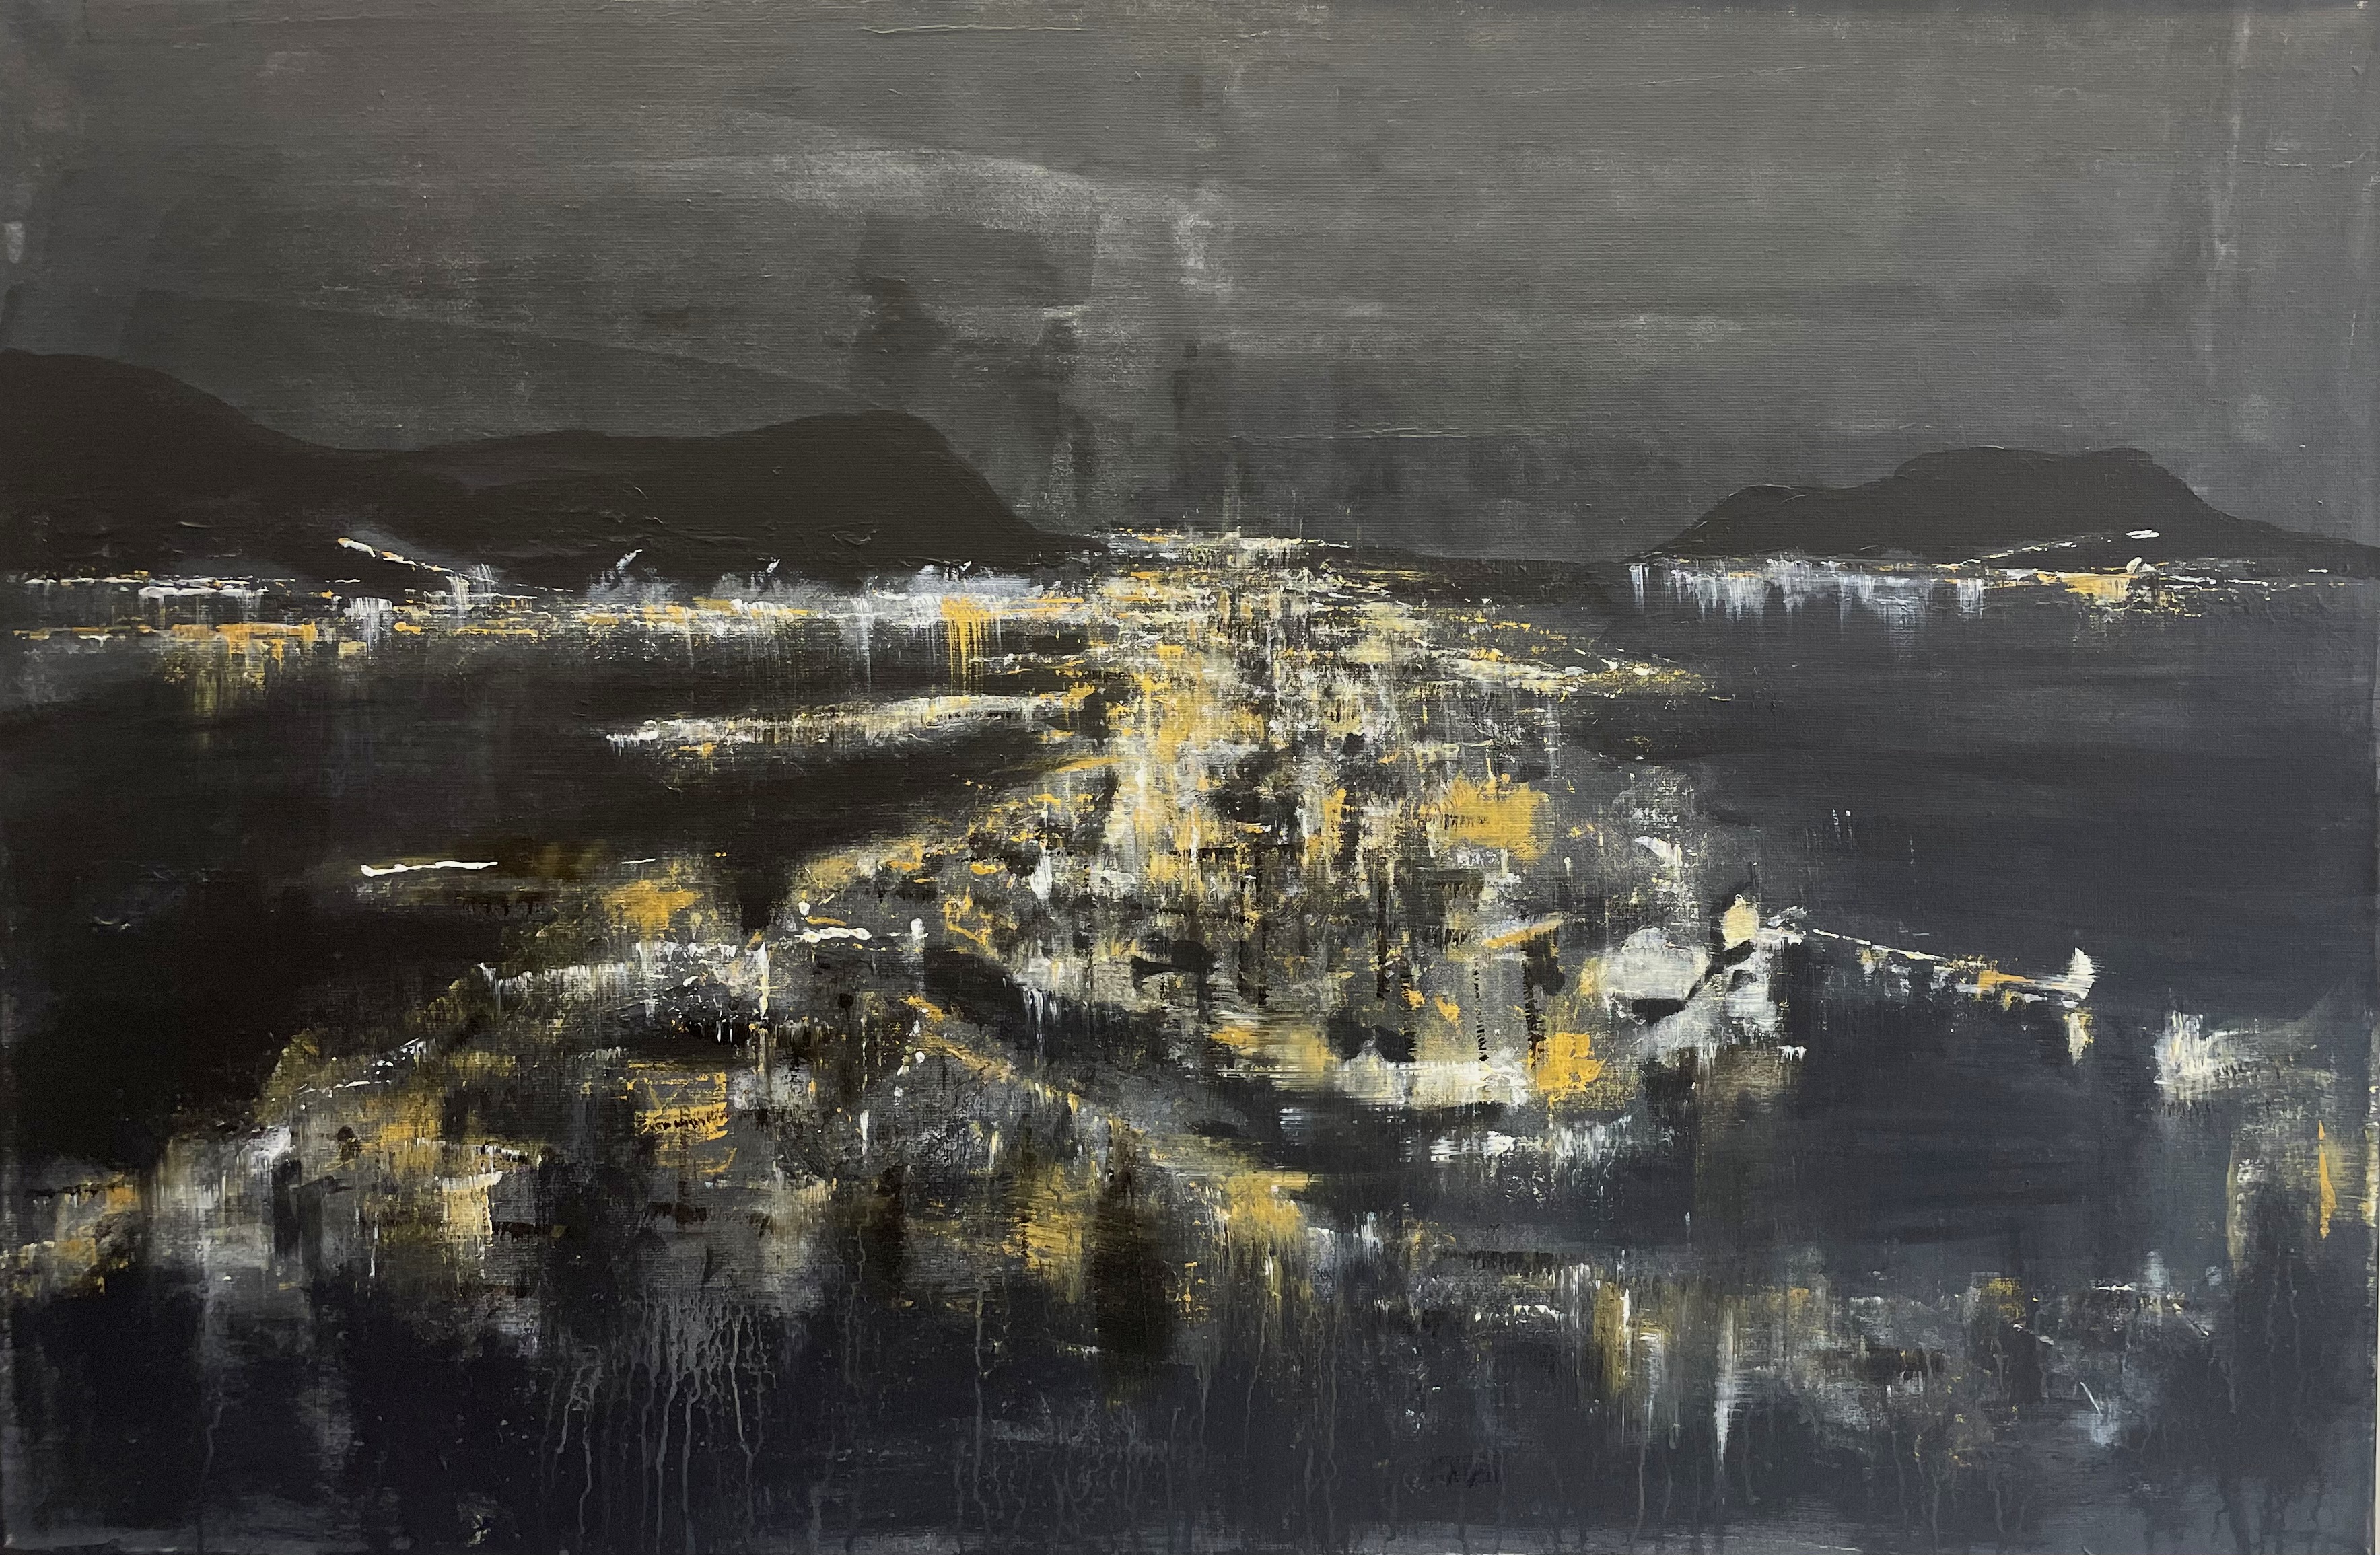 Ålesund by Night